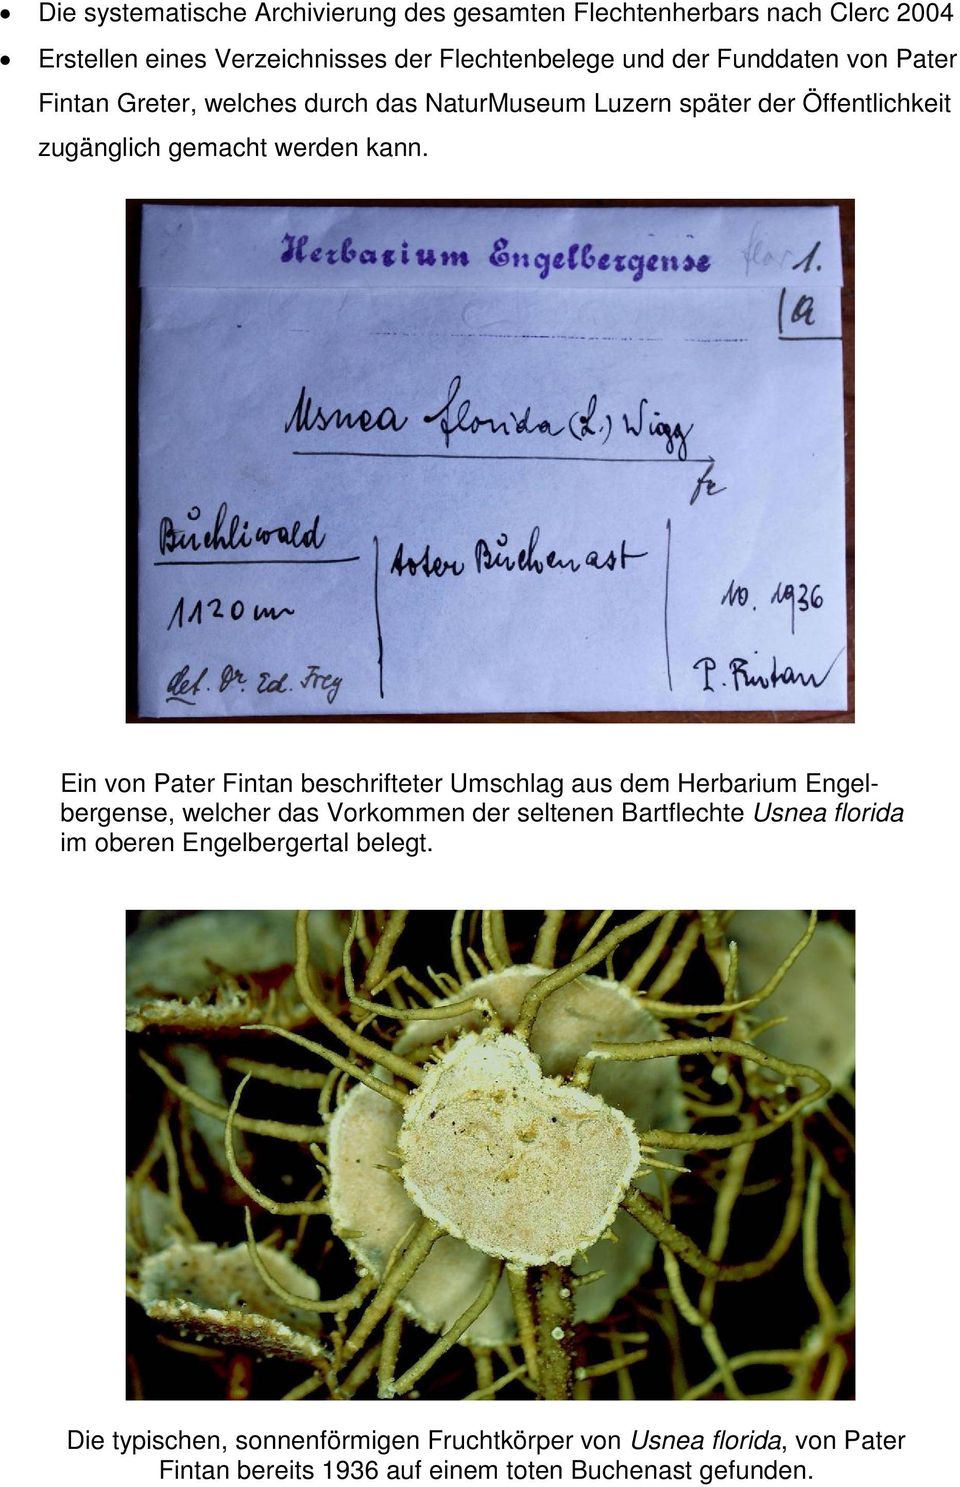 Ein von Pater Fintan beschrifteter Umschlag aus dem Herbarium Engelbergense, welcher das Vorkommen der seltenen Bartflechte Usnea florida im